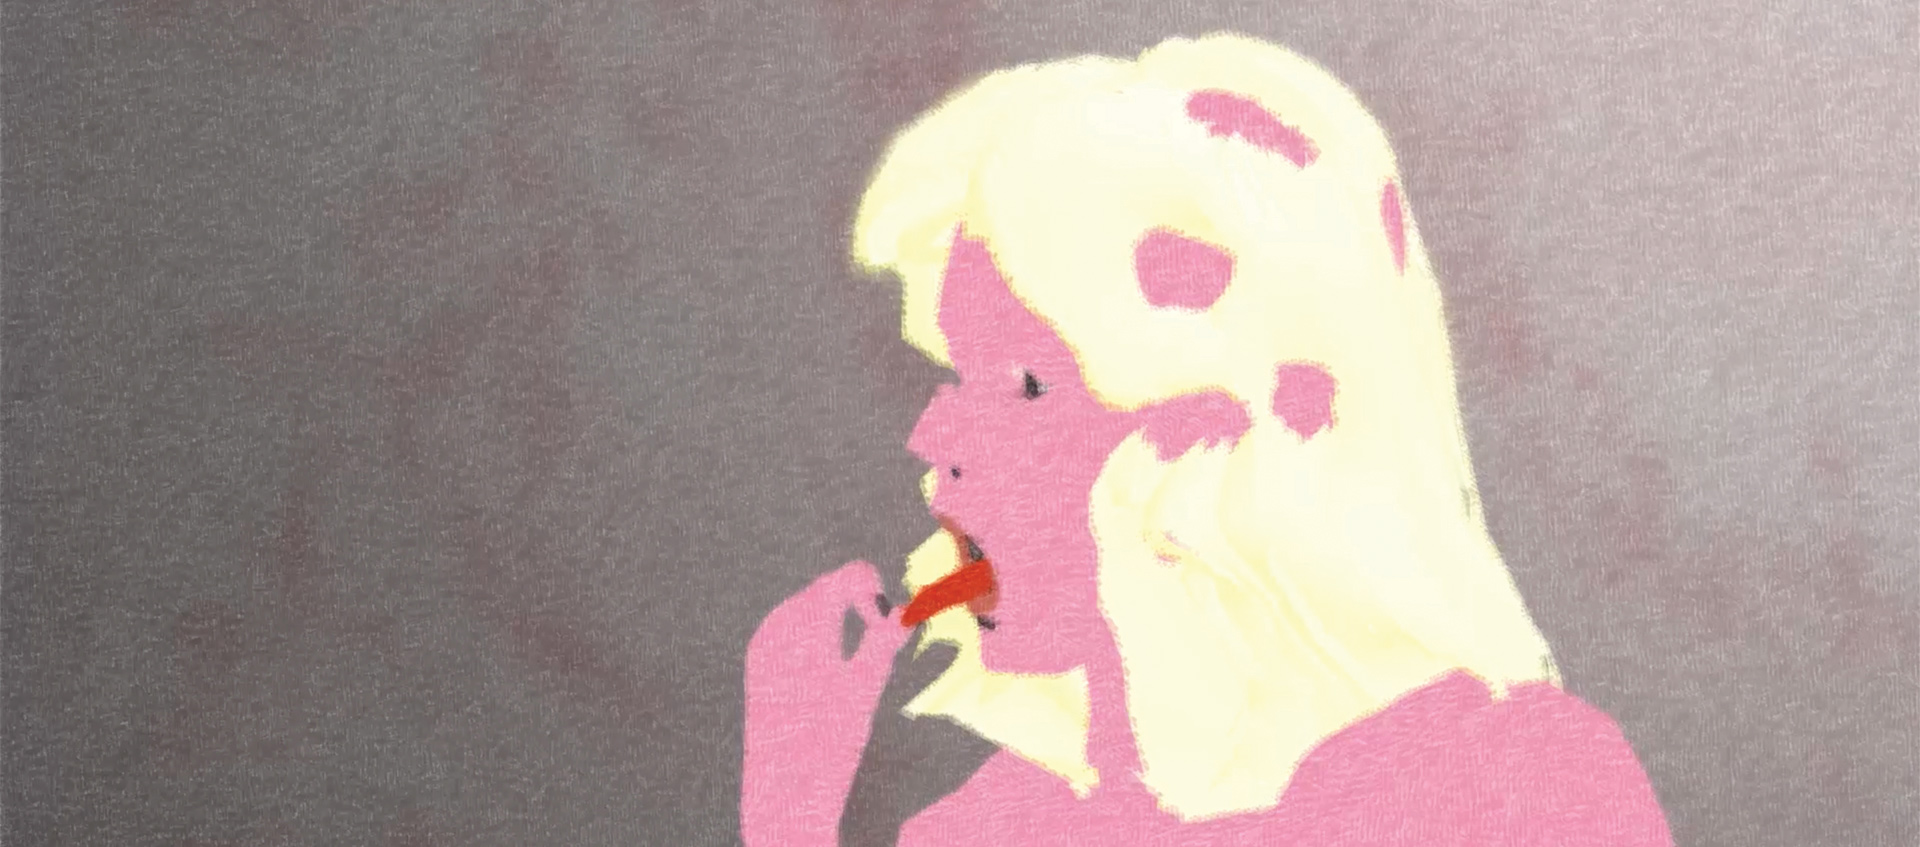 Animated woman grabbing tongue